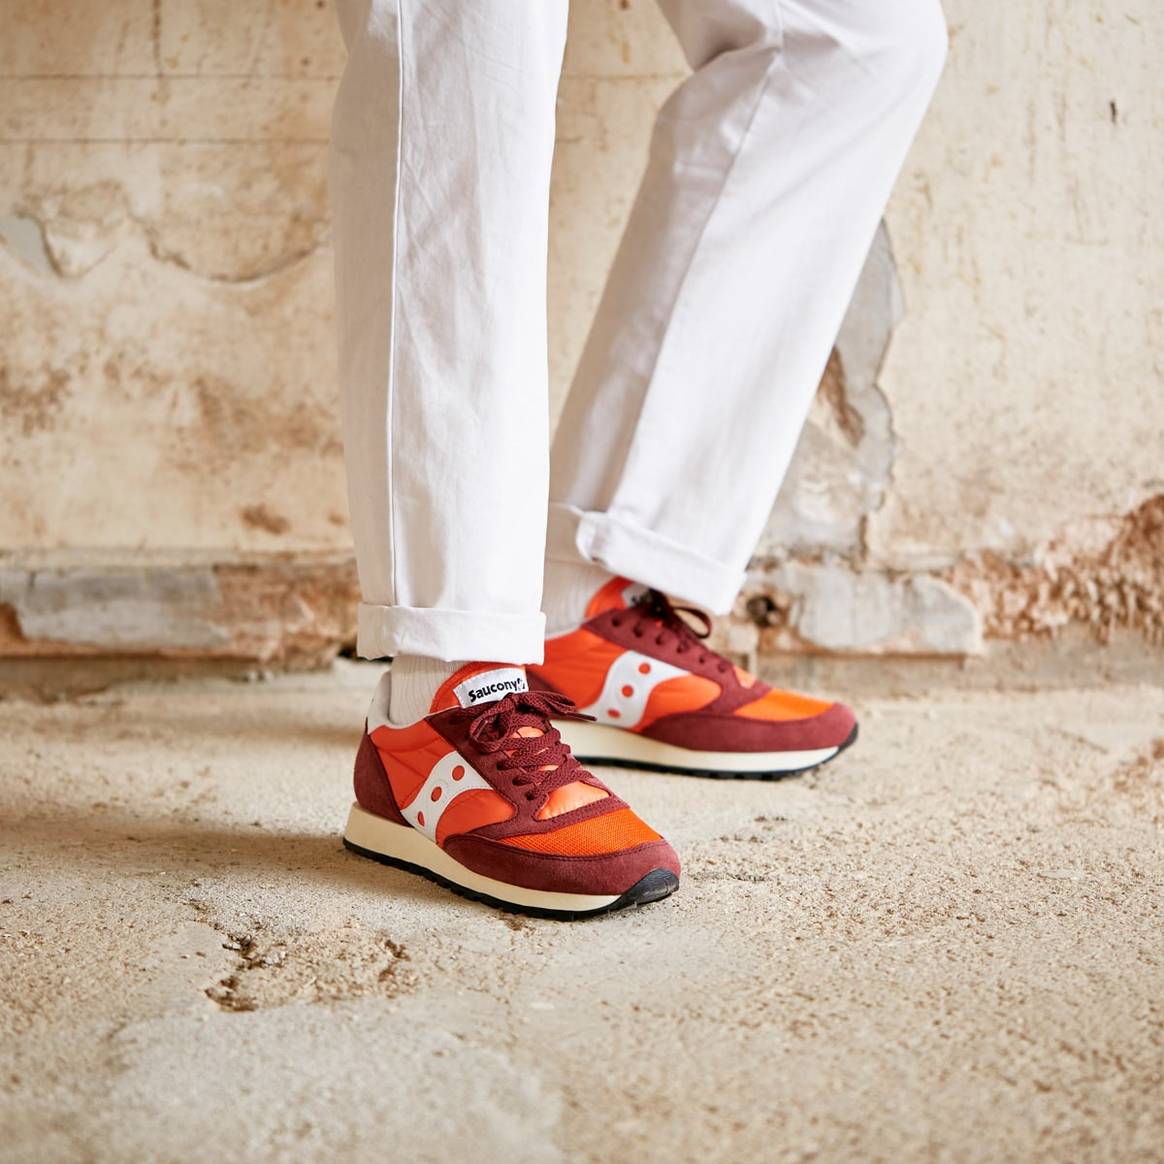 Saucony, iconische loopschoen van weleer, maakt comeback met gloednieuwe dad sneaker